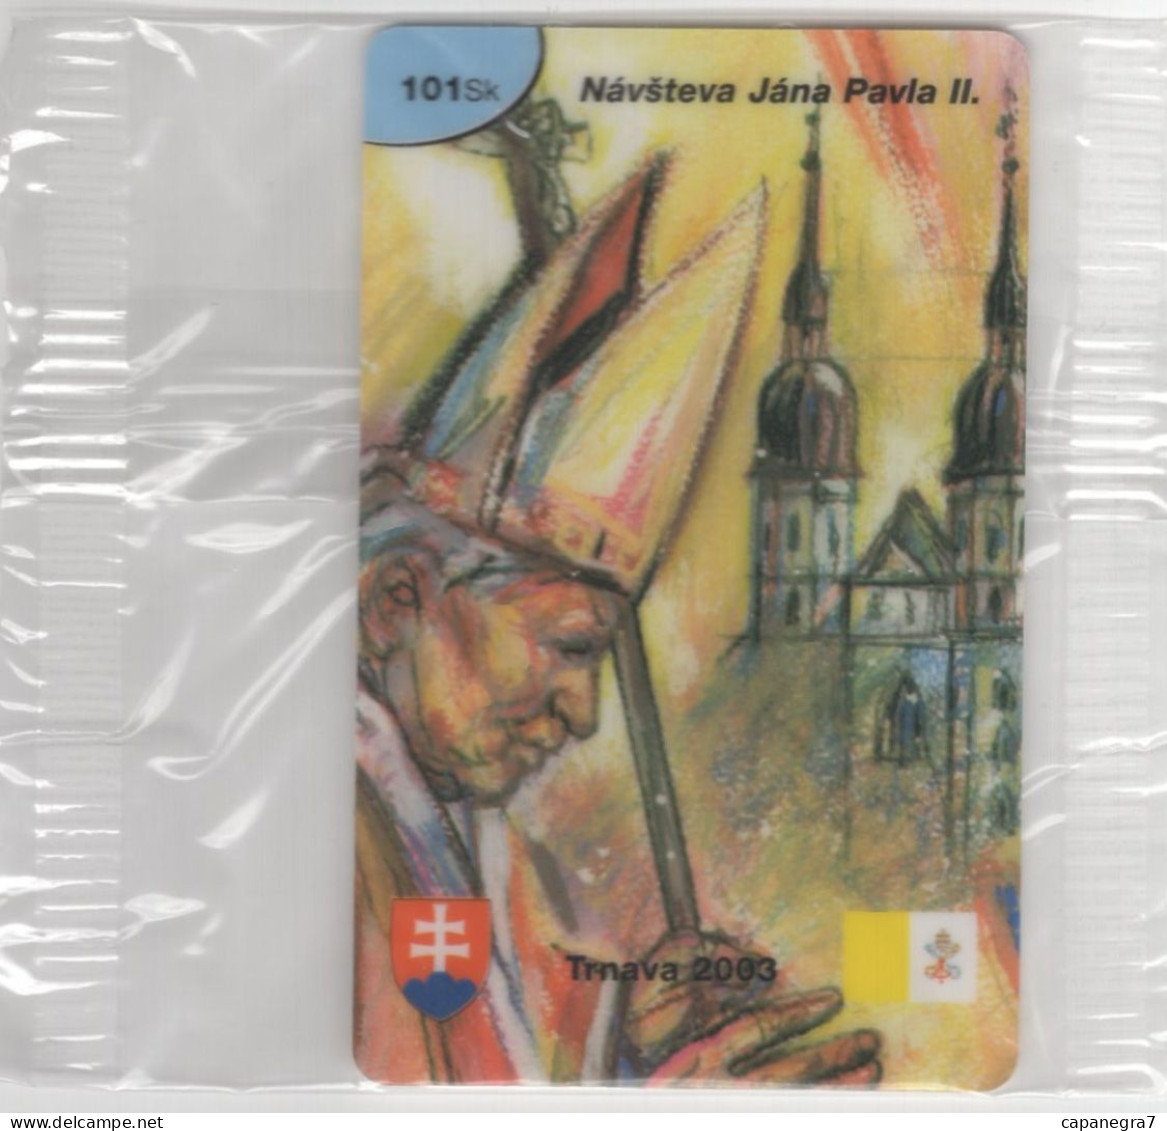 Pope John Paulu II. - Trnava 2003, Prepaid Calling Card, 101 Sk., 1.250 Pc., GlobalIPhone, Slovakia, Mint, Packed - Eslovaquia